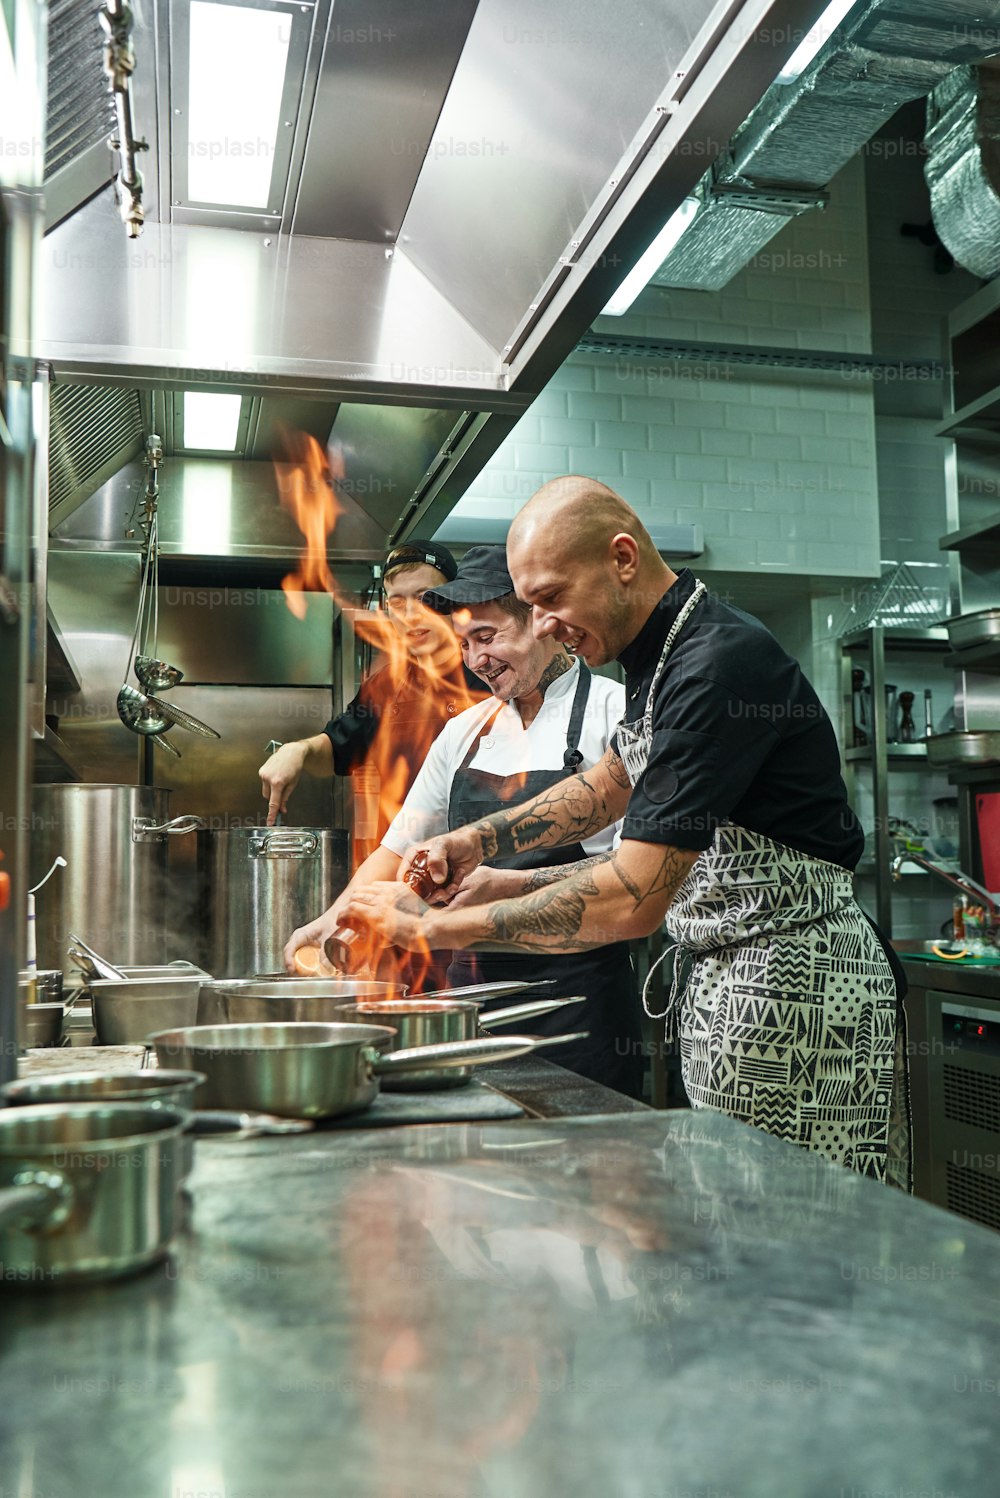 Molto caldo Allegro chef e due suoi assistenti che preparano il piatto sul fornello con un fuoco aperto nella cucina del ristorante. Flambe. Concetto di cottura